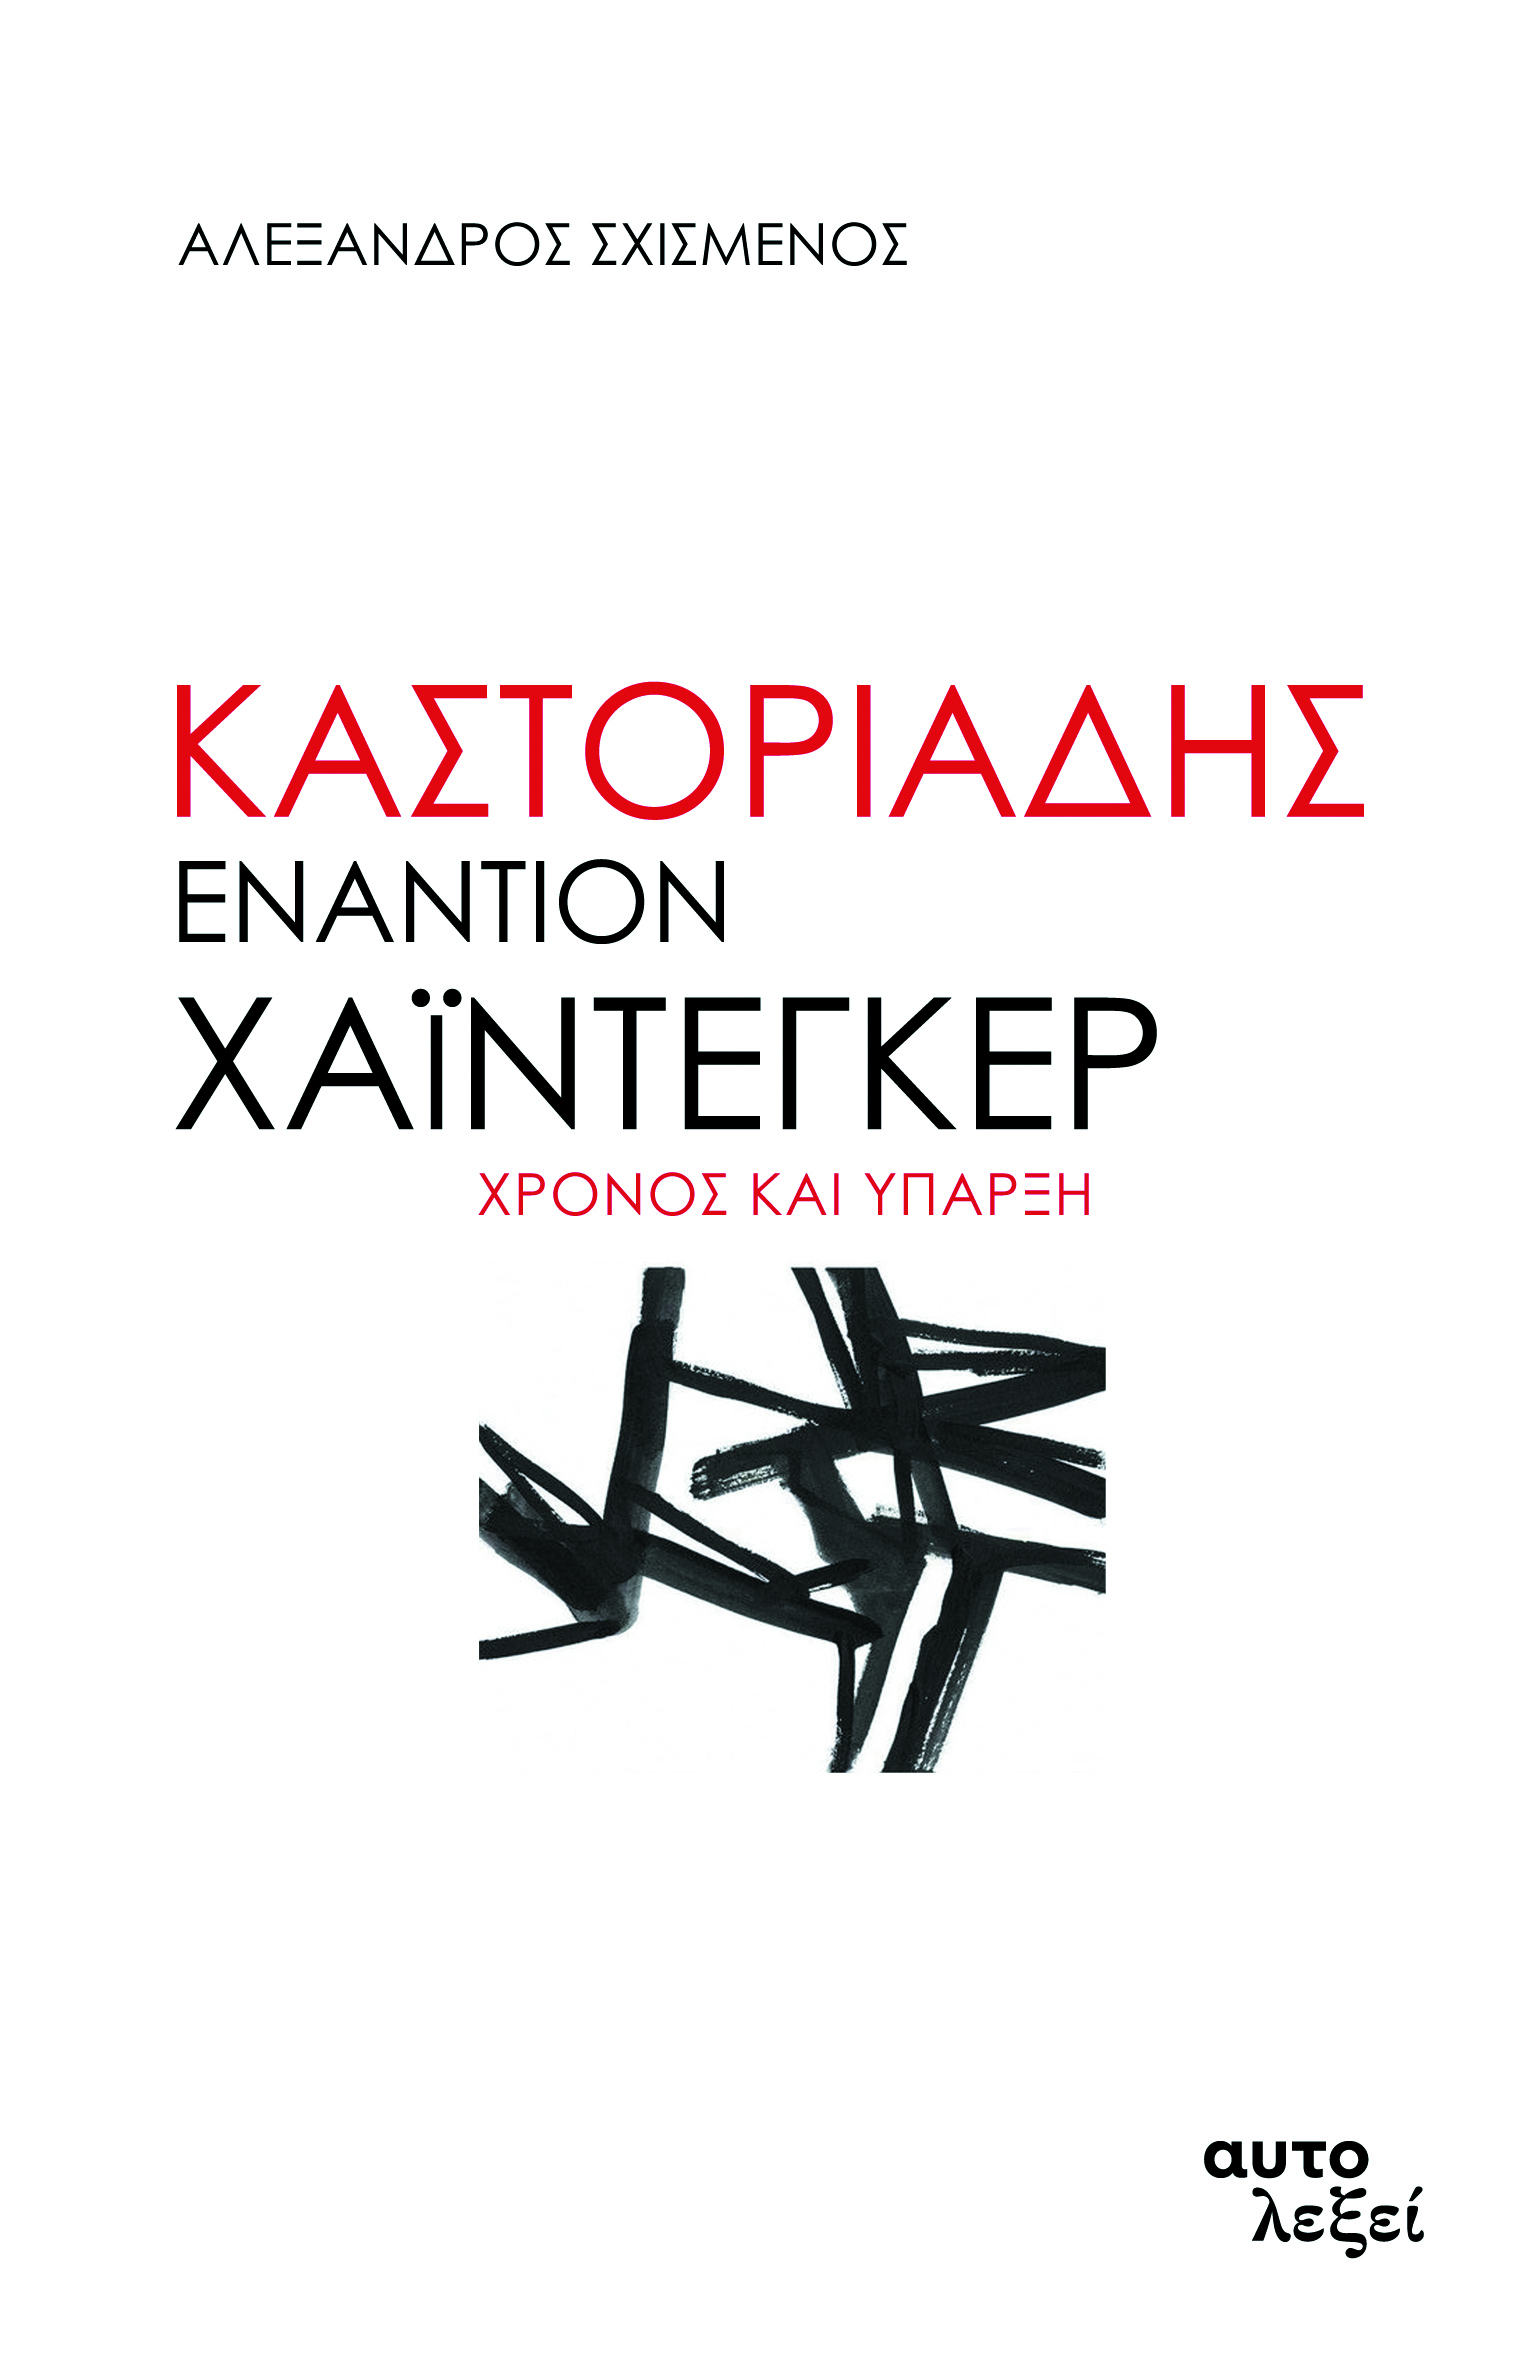 Καστοριάδης εναντίον Χάιντεγκερ, Χρόνος και ύπαρξη, Σχισμένος, Αλέξανδρος, Αυτολεξεί, 2020